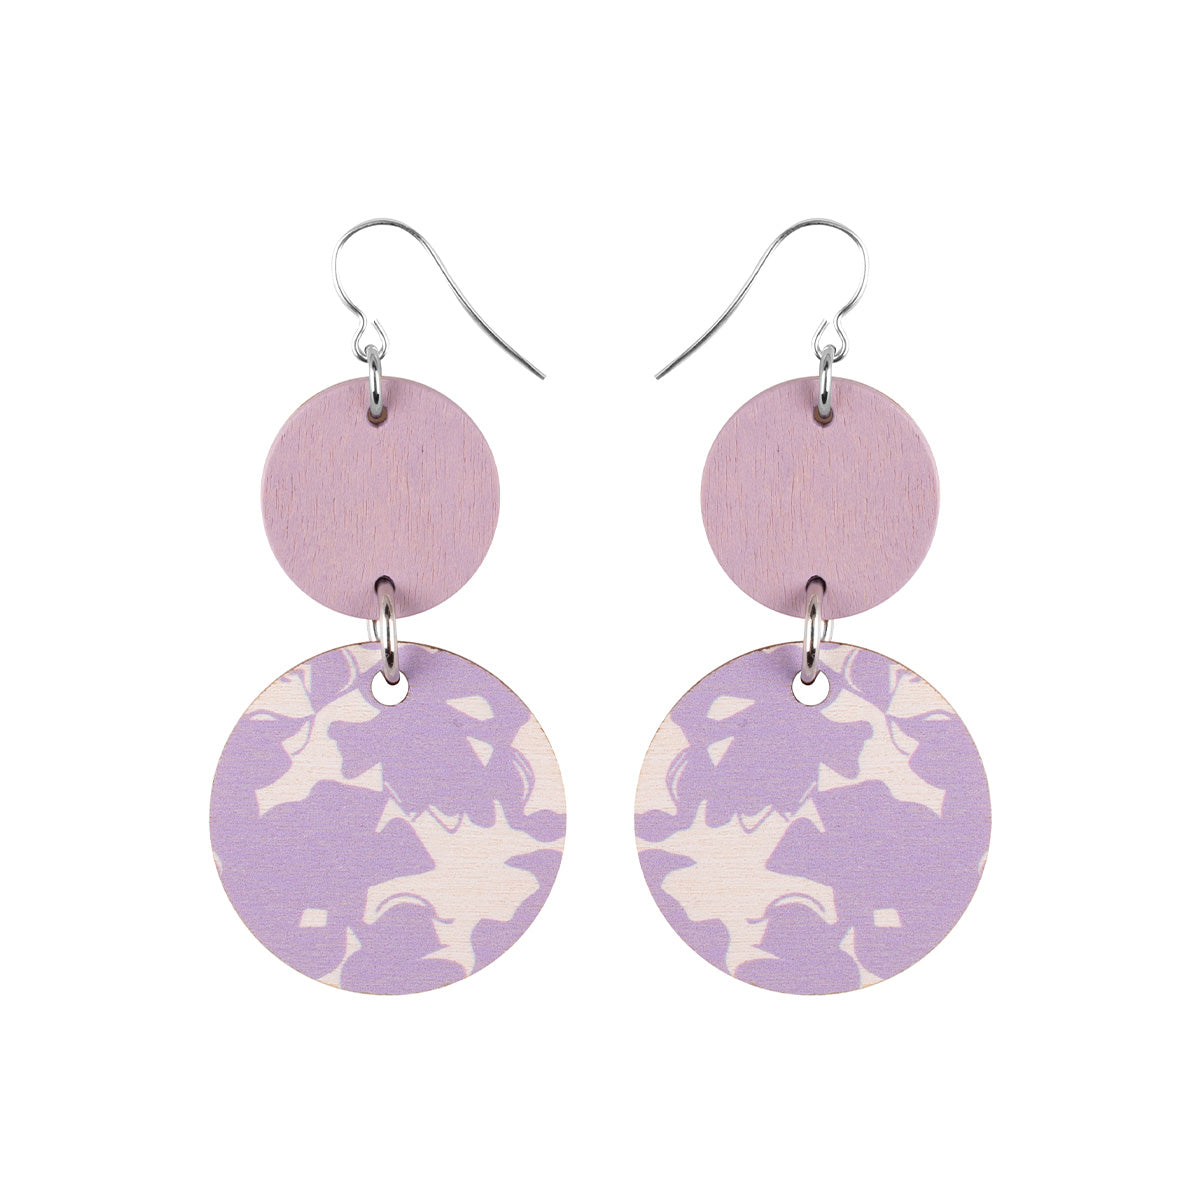 Soliseva earrings, lavender